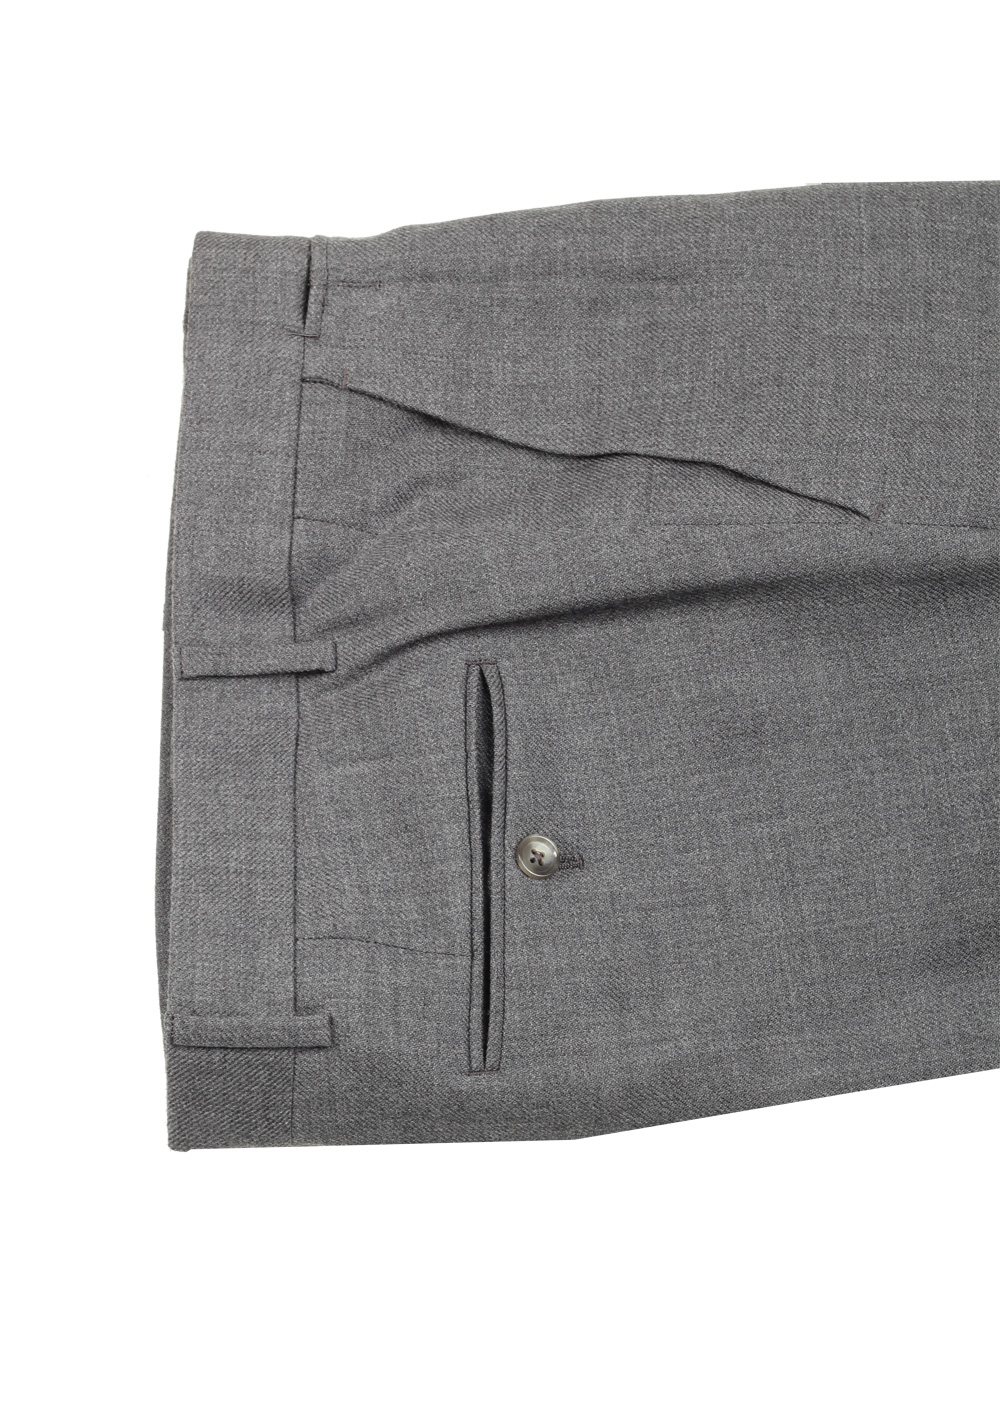 TOM FORD Atticus Gray Suit Size 46 / 36R U.S. | Costume Limité